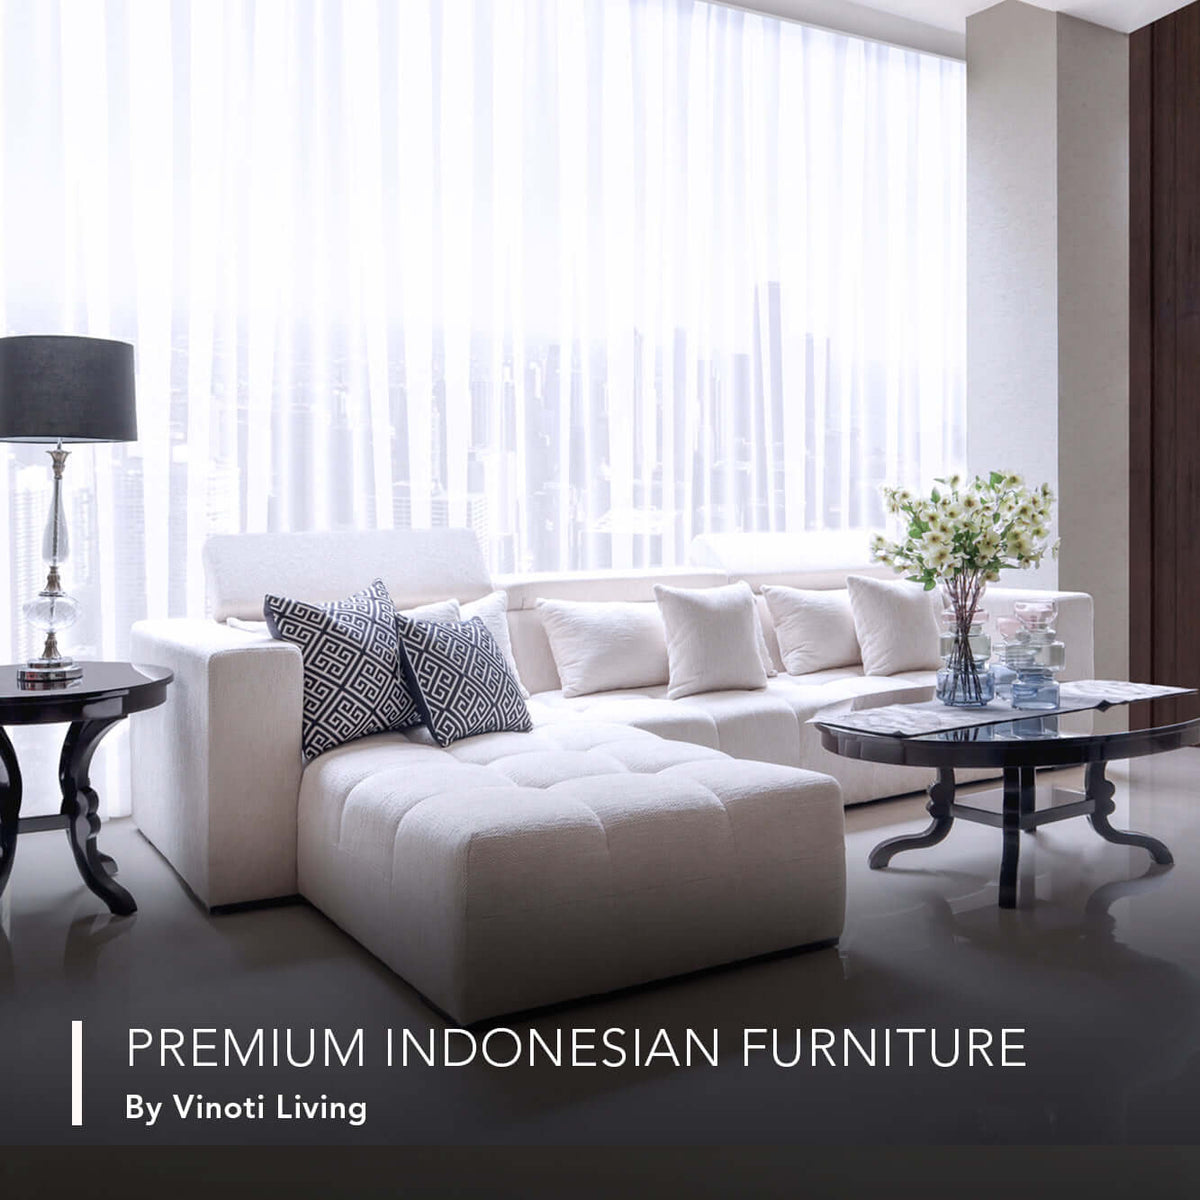 Vinoti Living: Furnitur Premium Indonesia